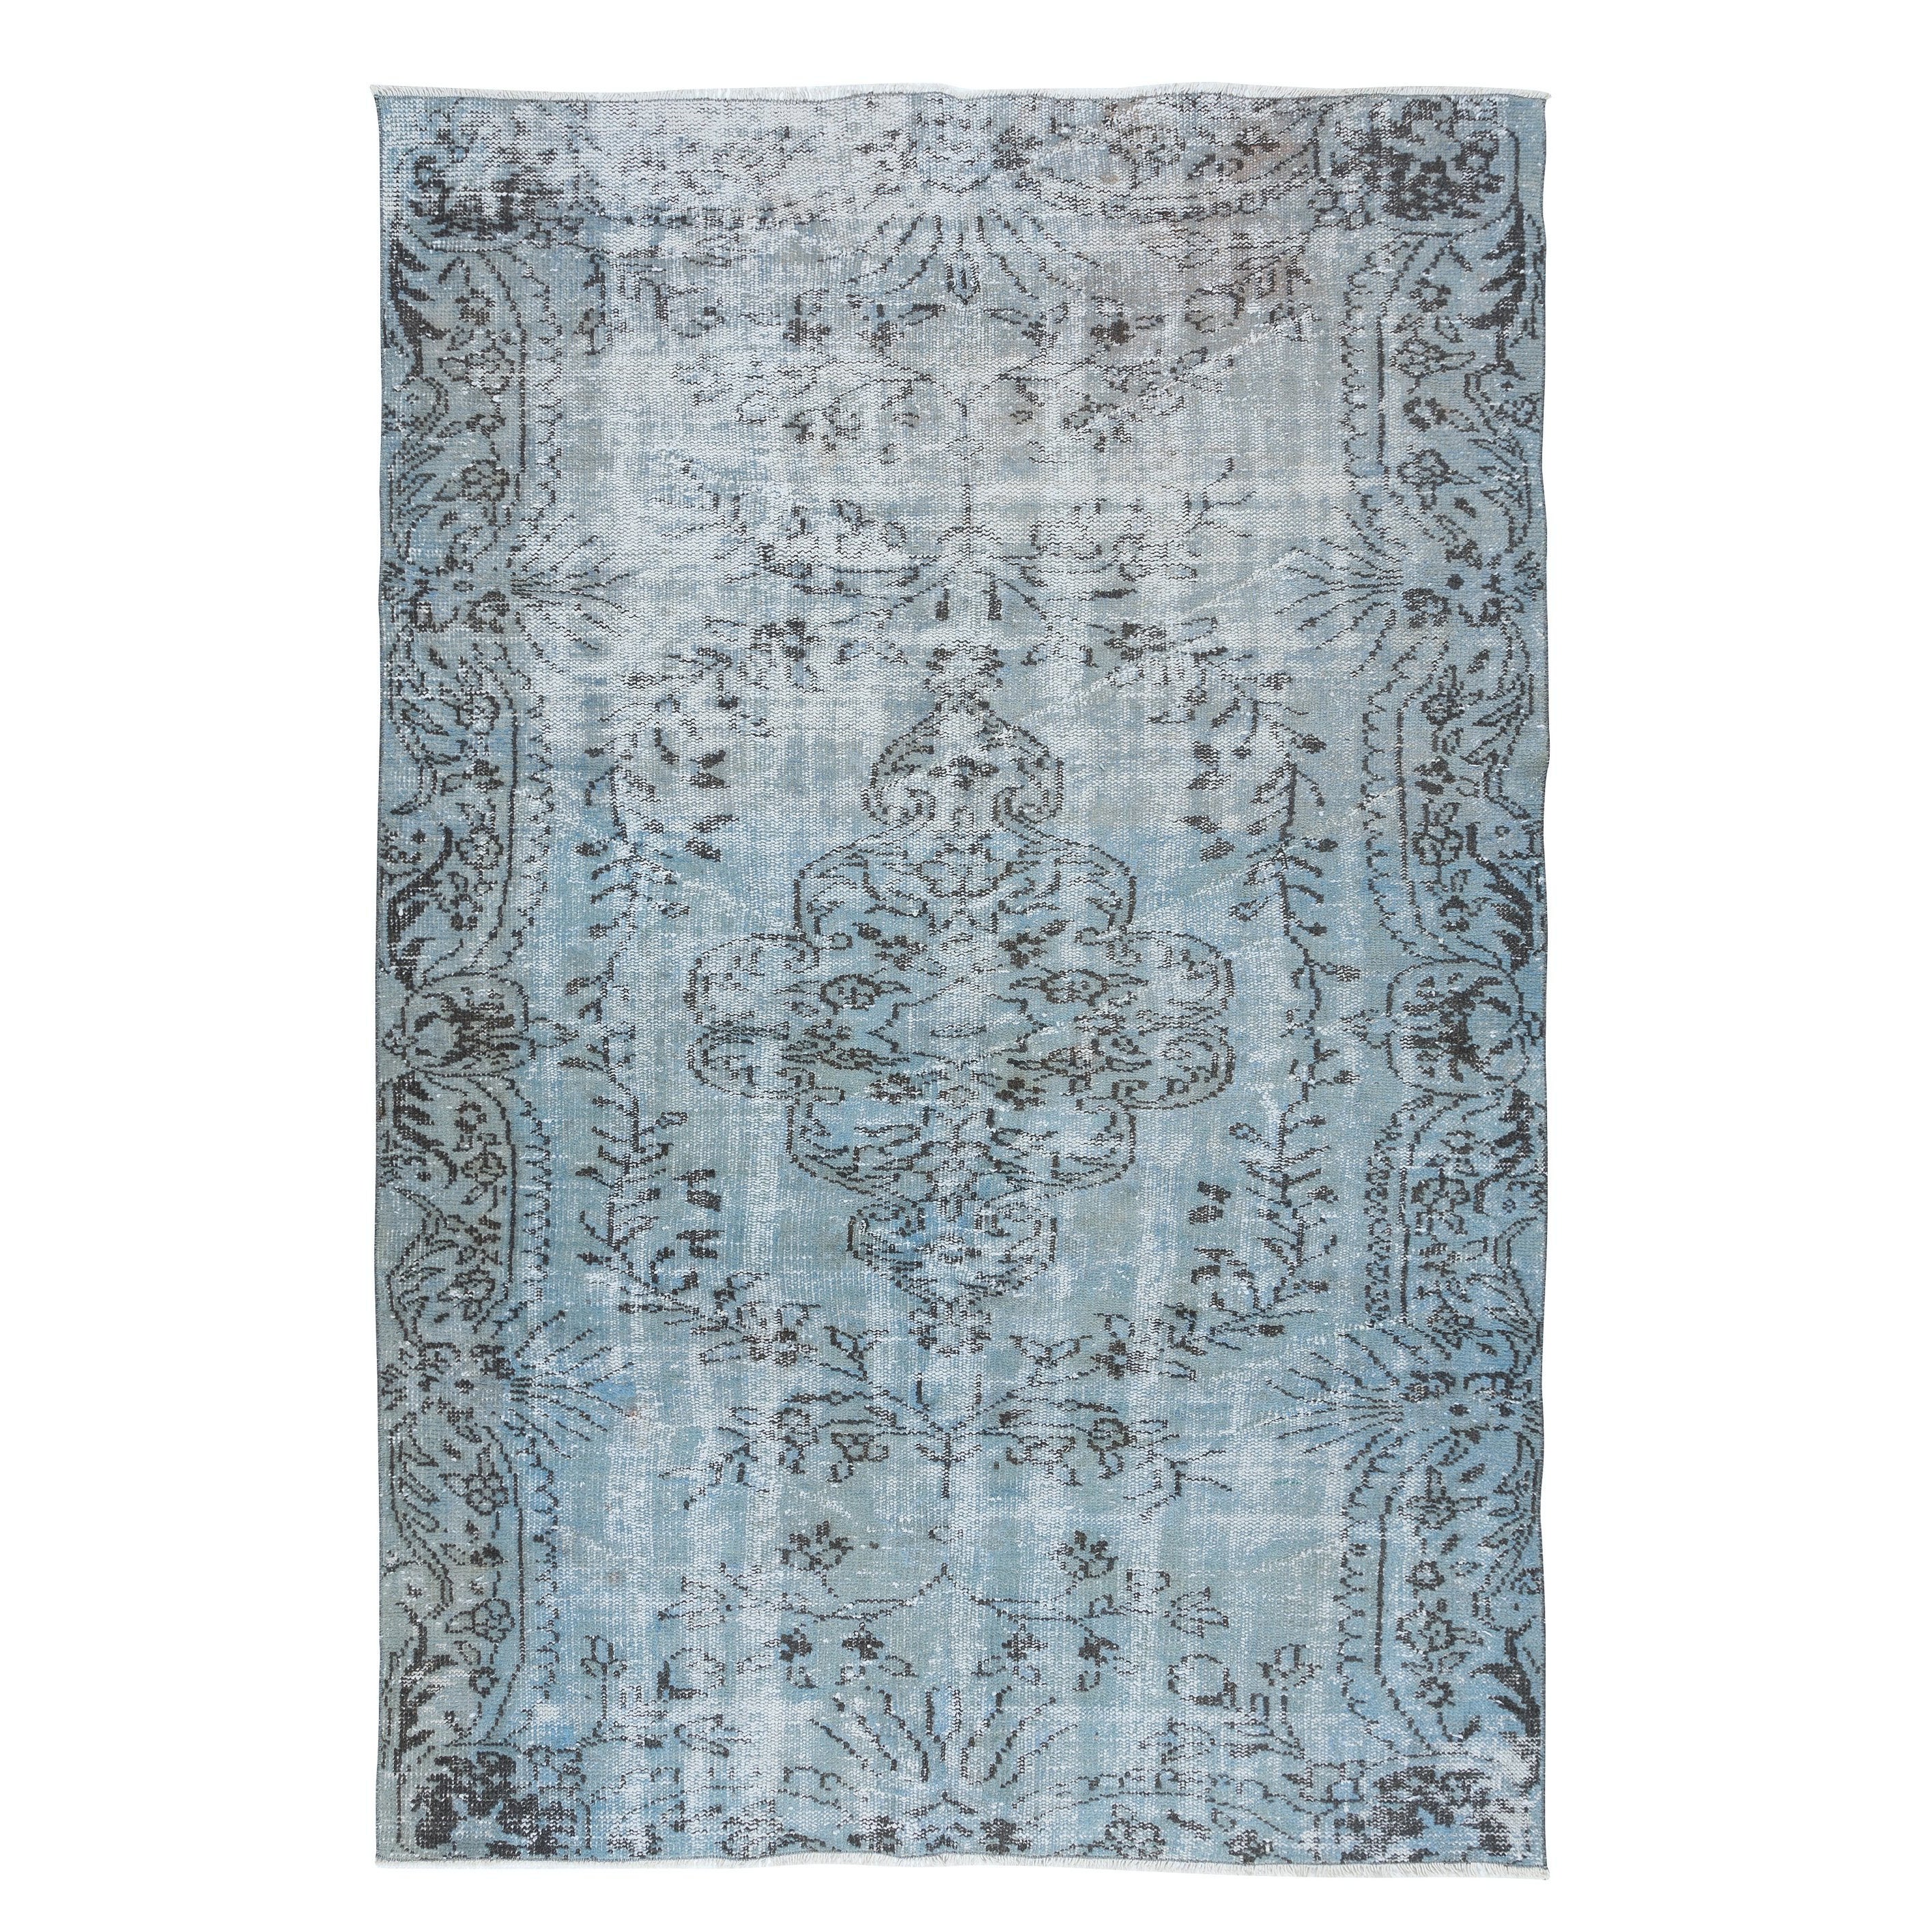 5.7x8.4 Ft Light Blue Handmade Turkish Rug, Contemporary Sky Blue Carpet For Sale